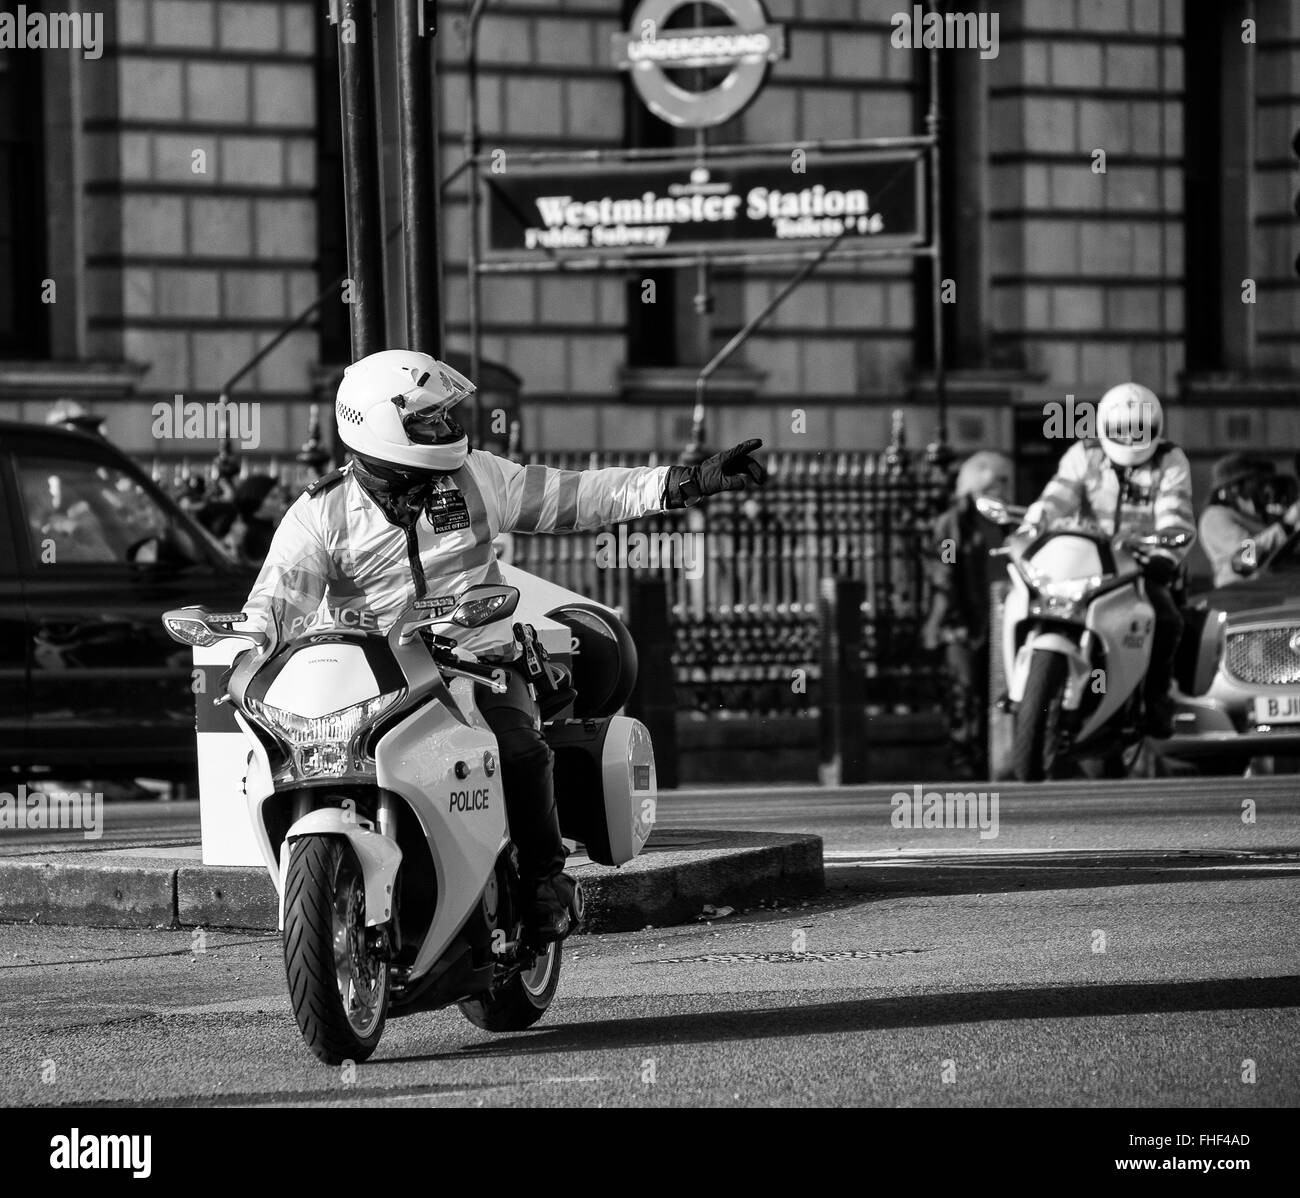 La polizia motociclisti scortare il Ministro del Governo da 10 Downing Street al Parlamento europeo Foto Stock